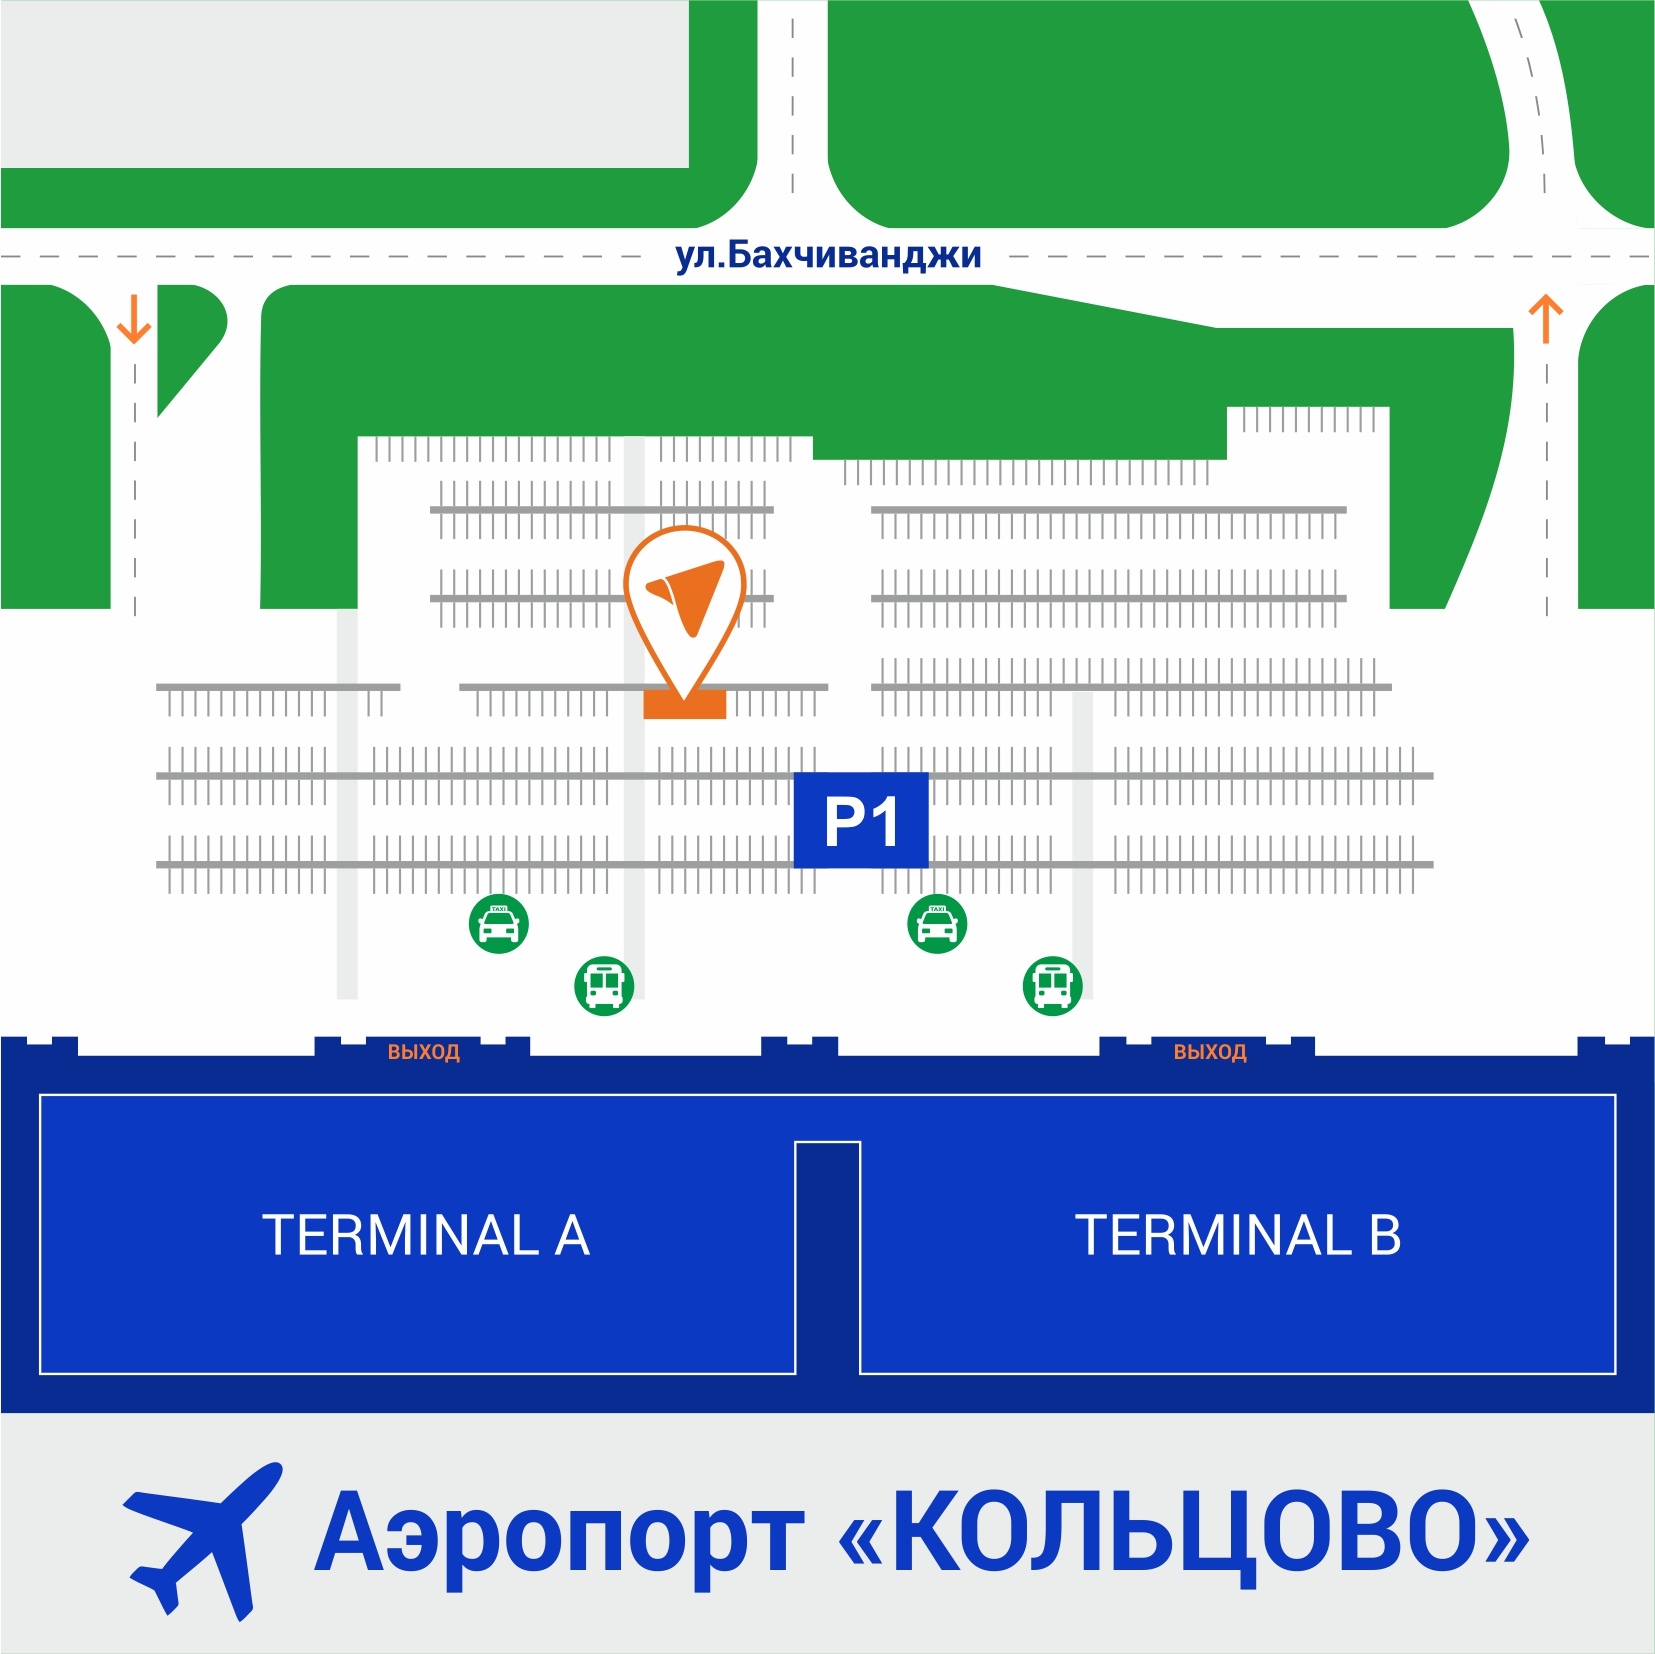 Аэропорт кольцово терминал в схема - 84 фото